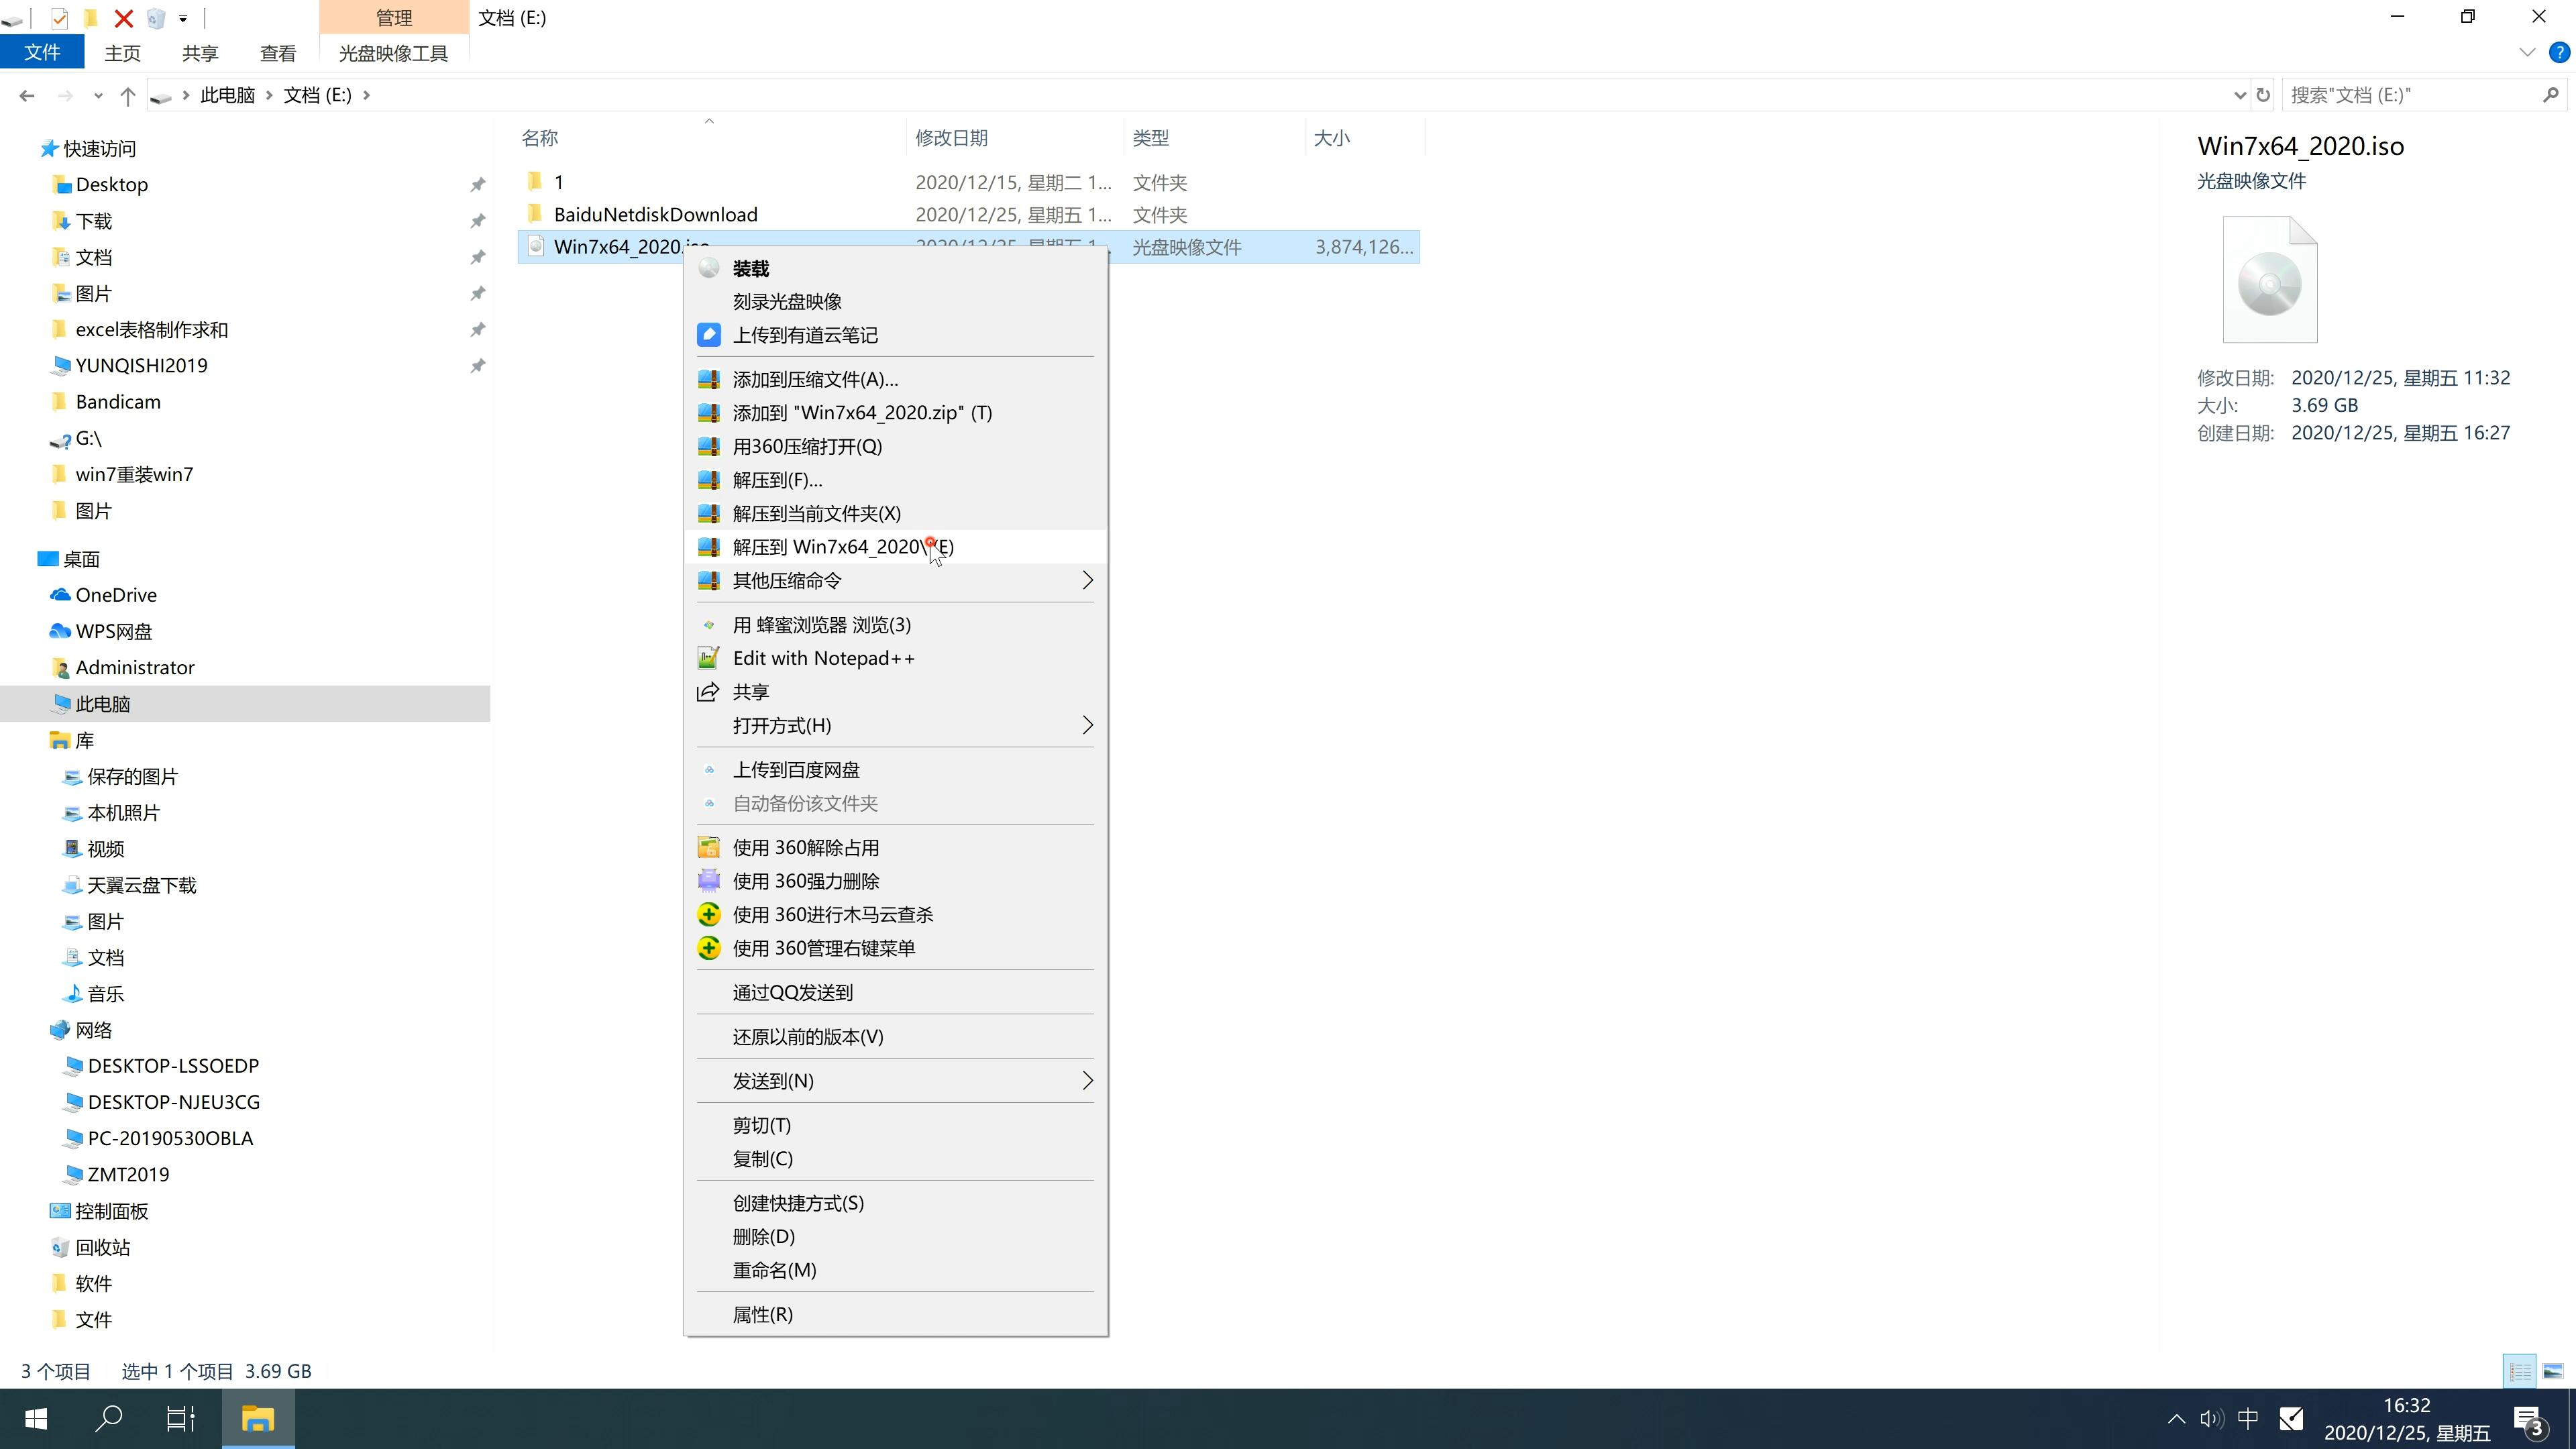 新惠普笔记本专用系统 Ghost Windows10 x64 SP1 纯净版系统镜像文件下载 V2021.02(2)